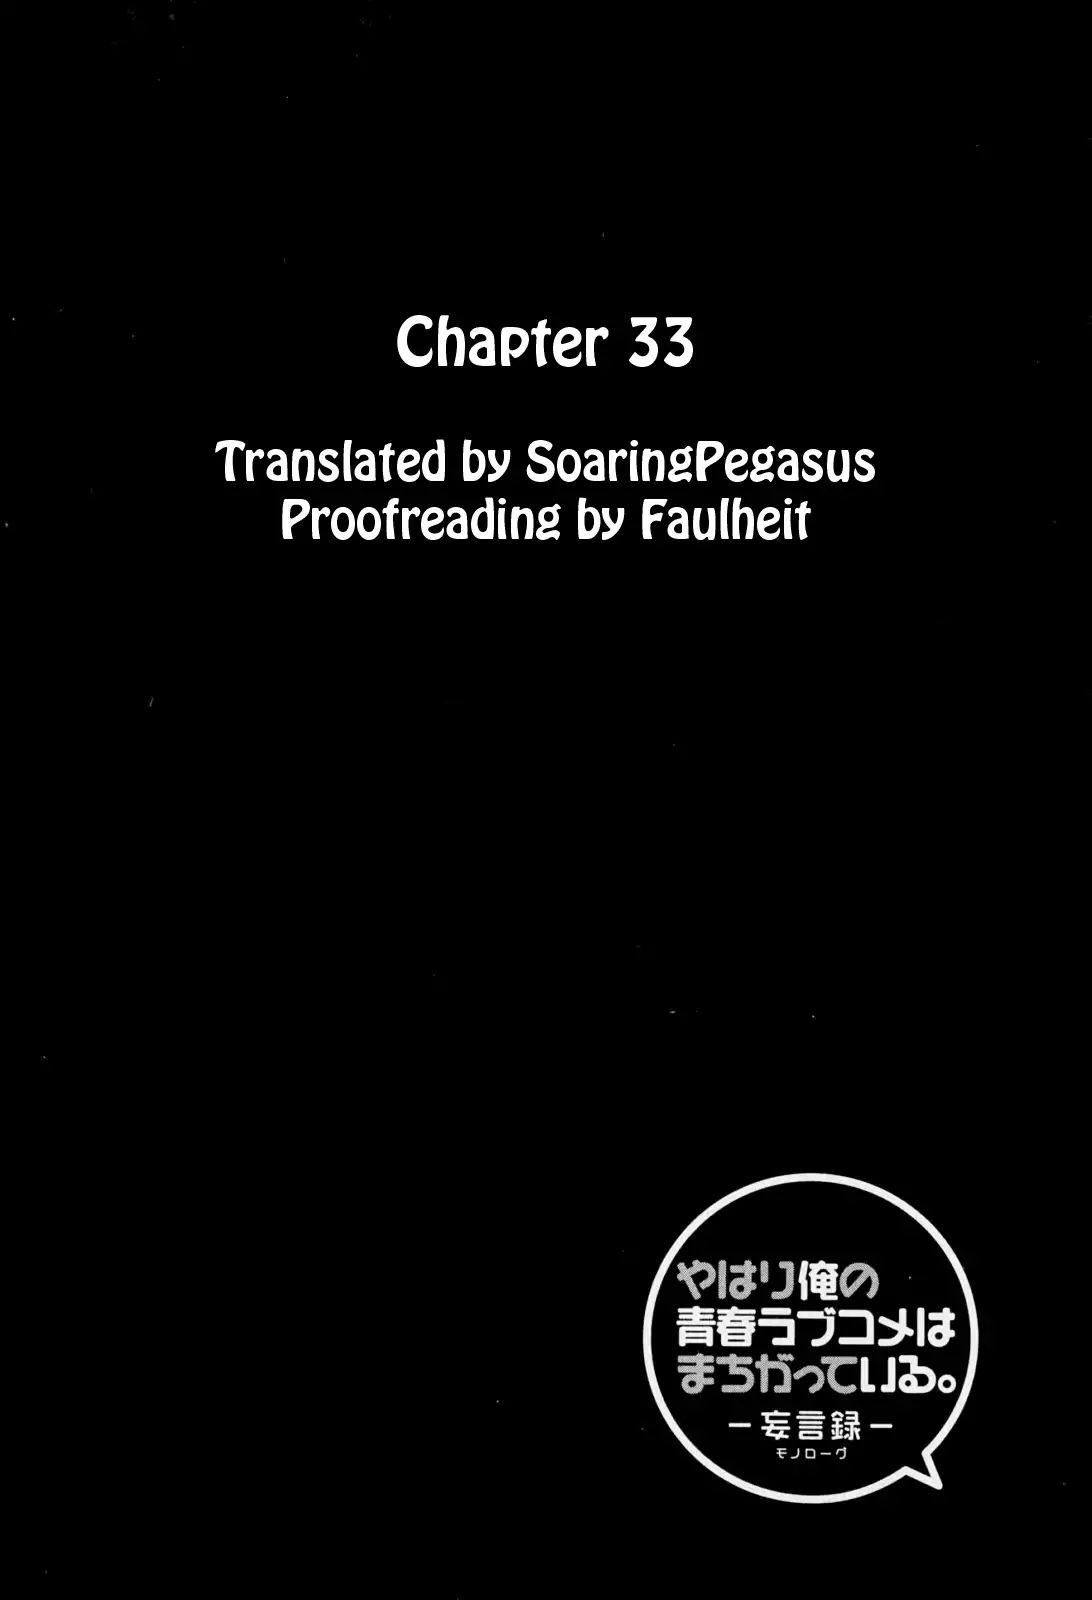 Yahari Ore no Seishun Rabukome wa Machigatte Iru. - Mougenroku Vol.7 Chapter 33